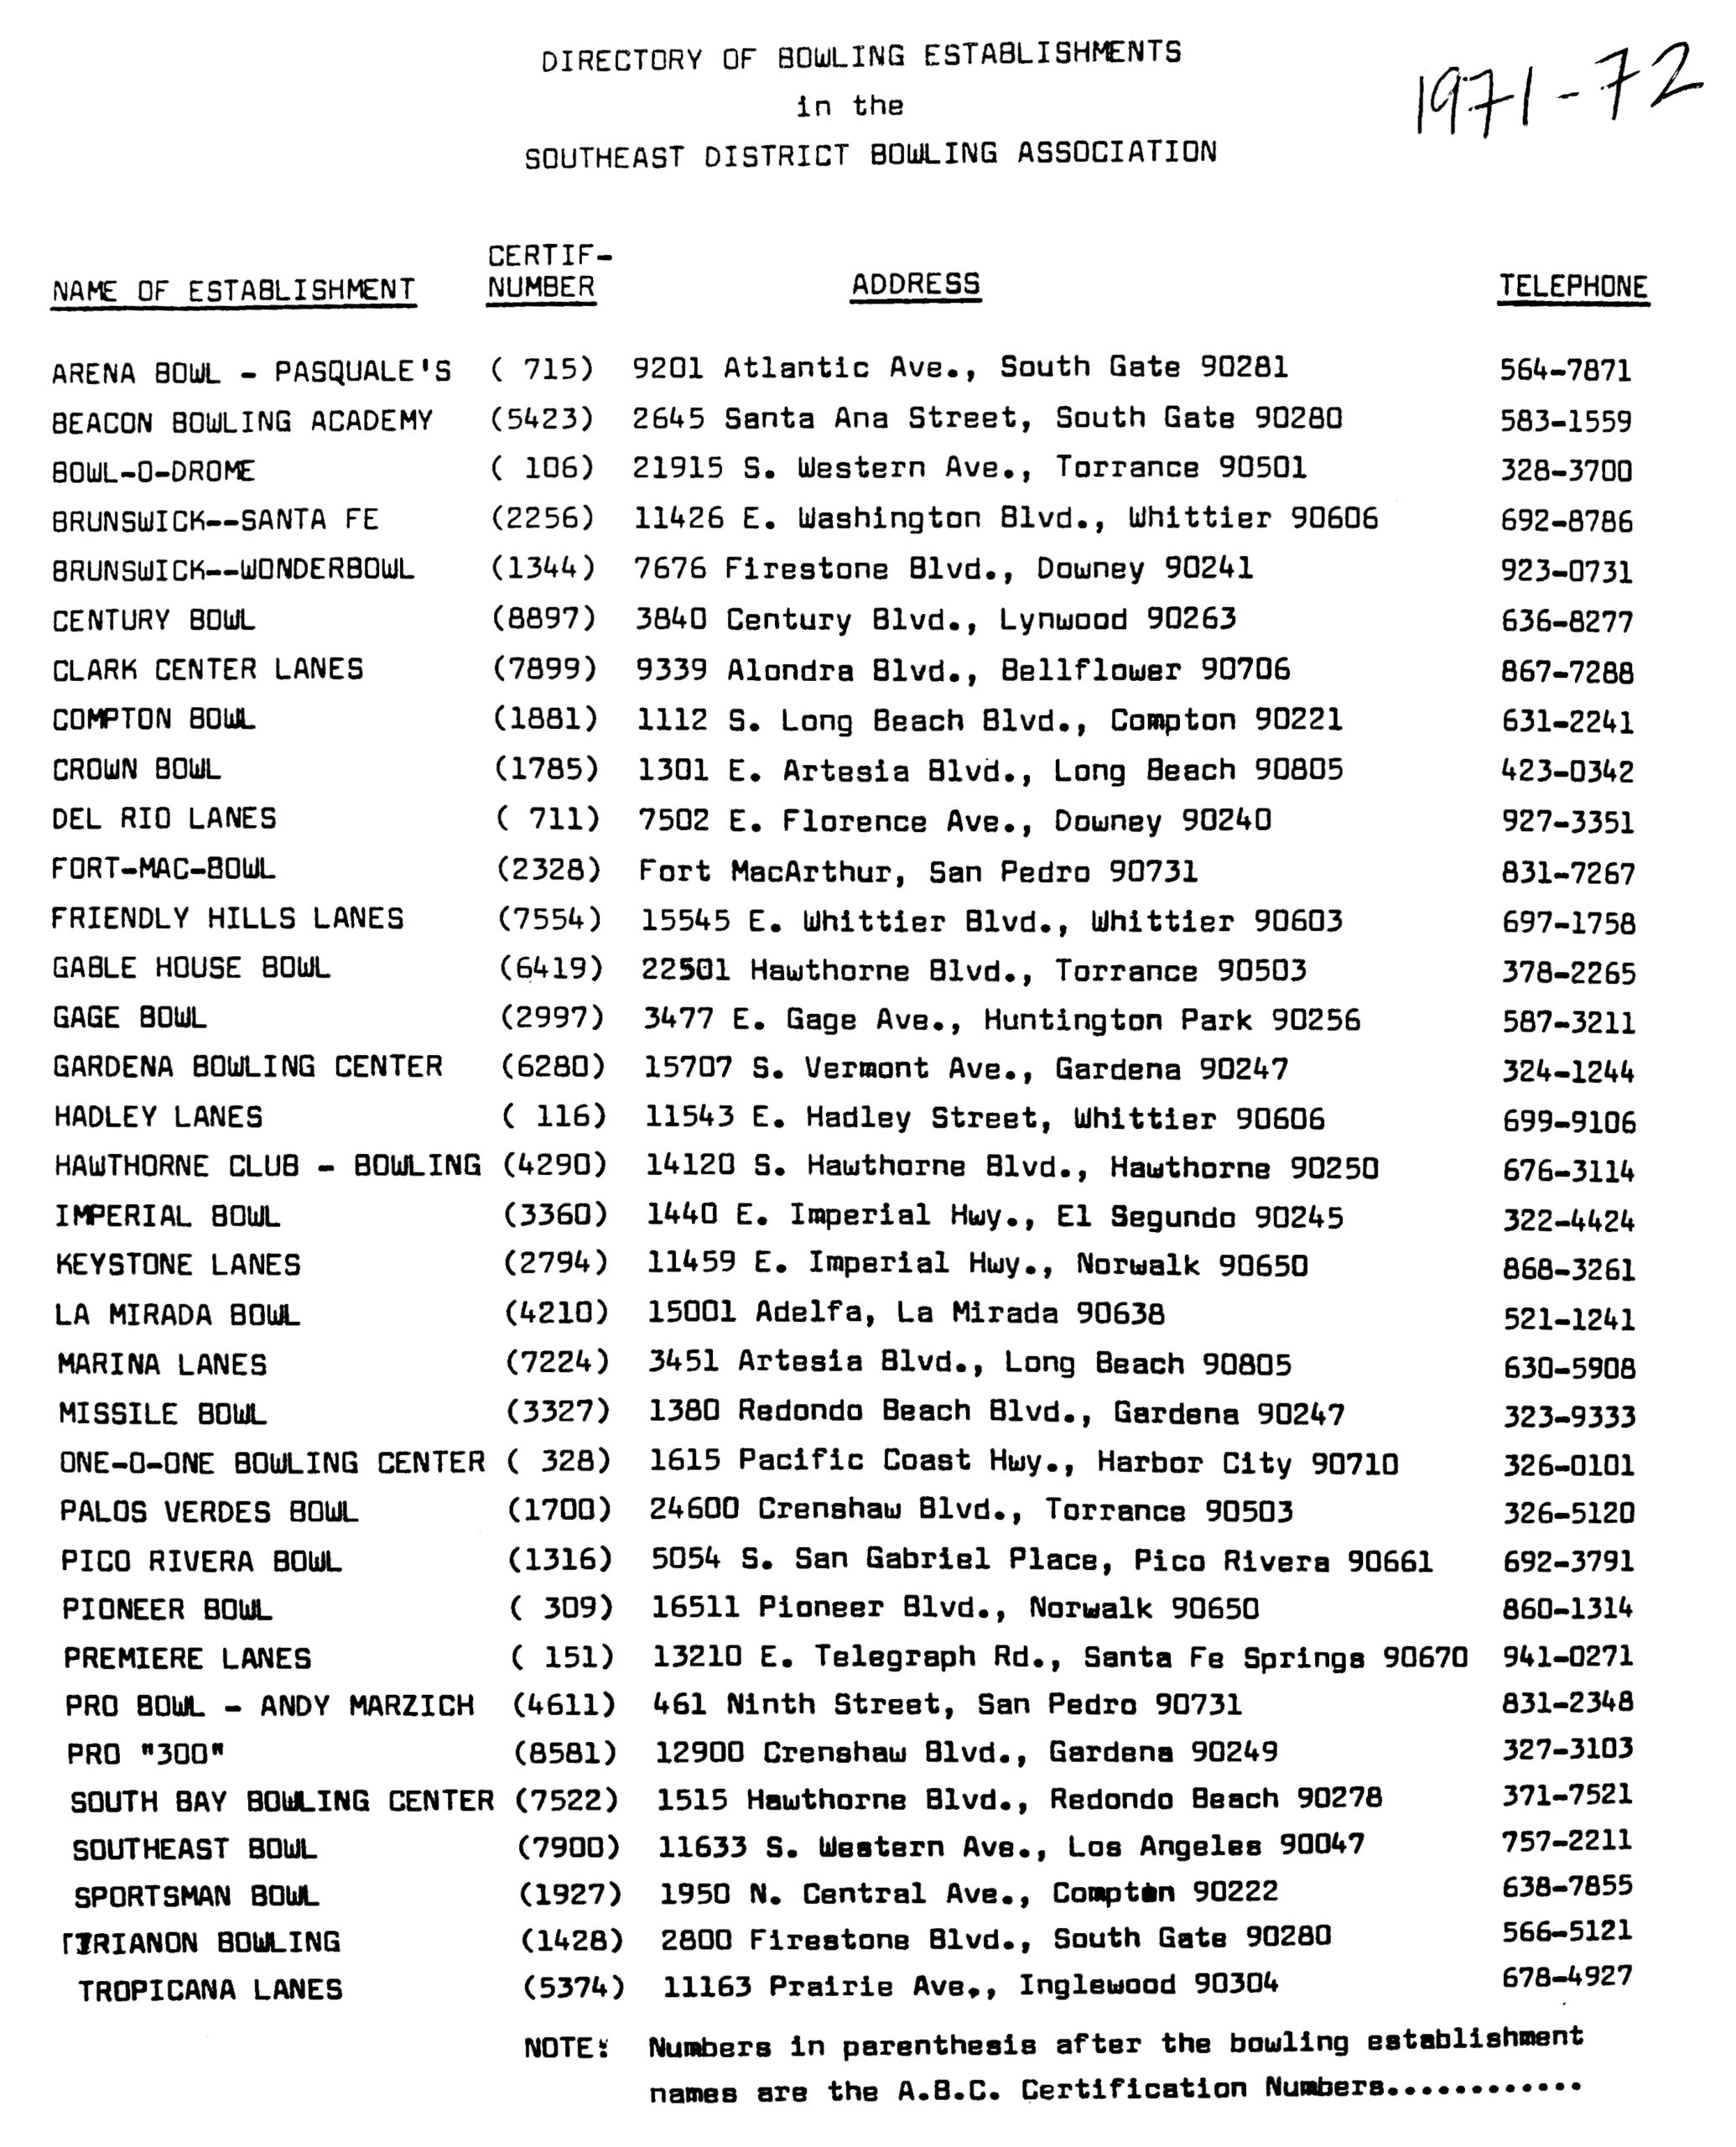 1971-72 SED centers